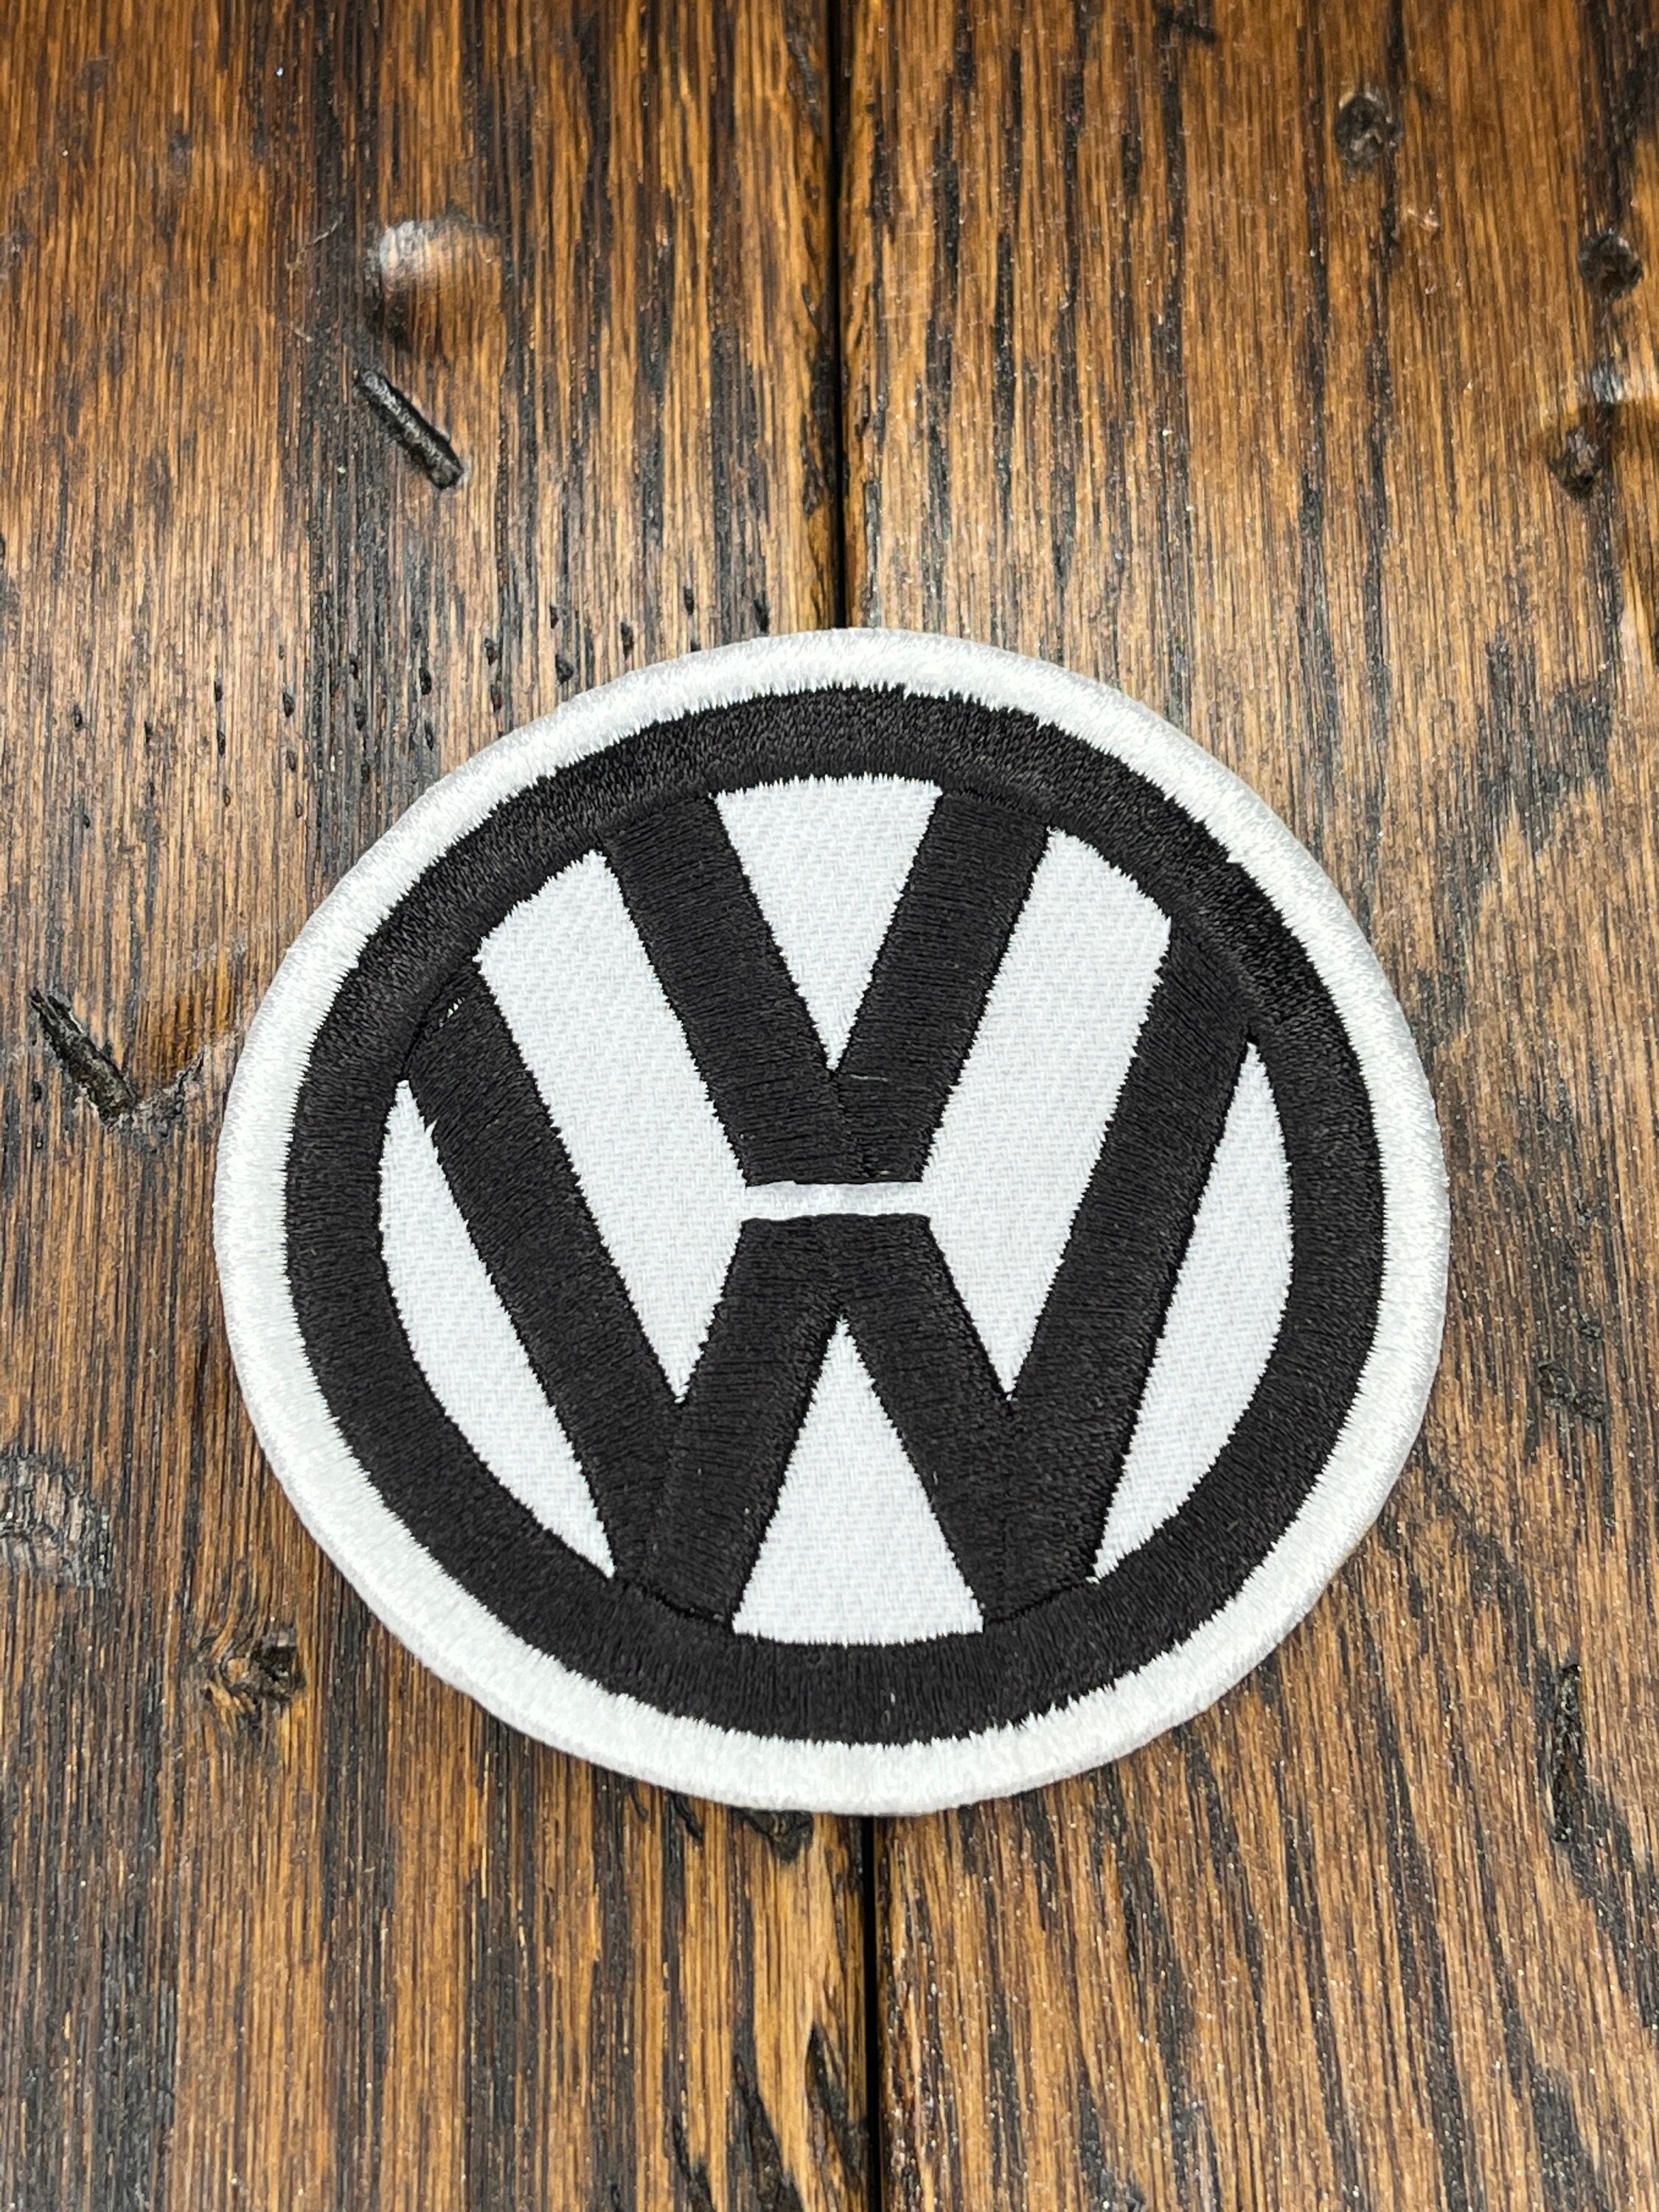 Volkswagen Patch -  Canada